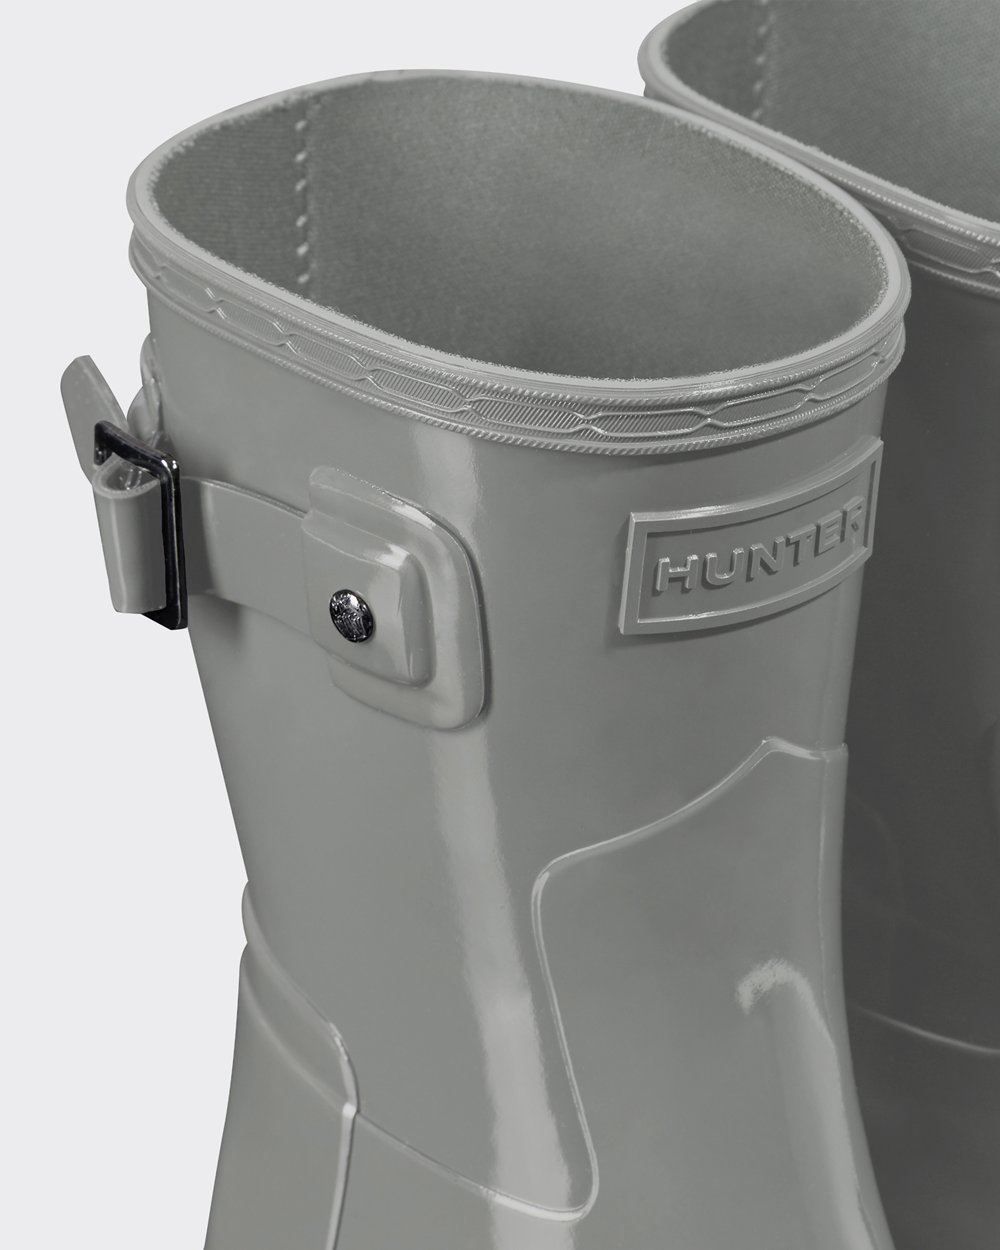 Womens Short Rain Boots - Hunter Refined Slim Fit Gloss (13IEAQRNB) - Grey